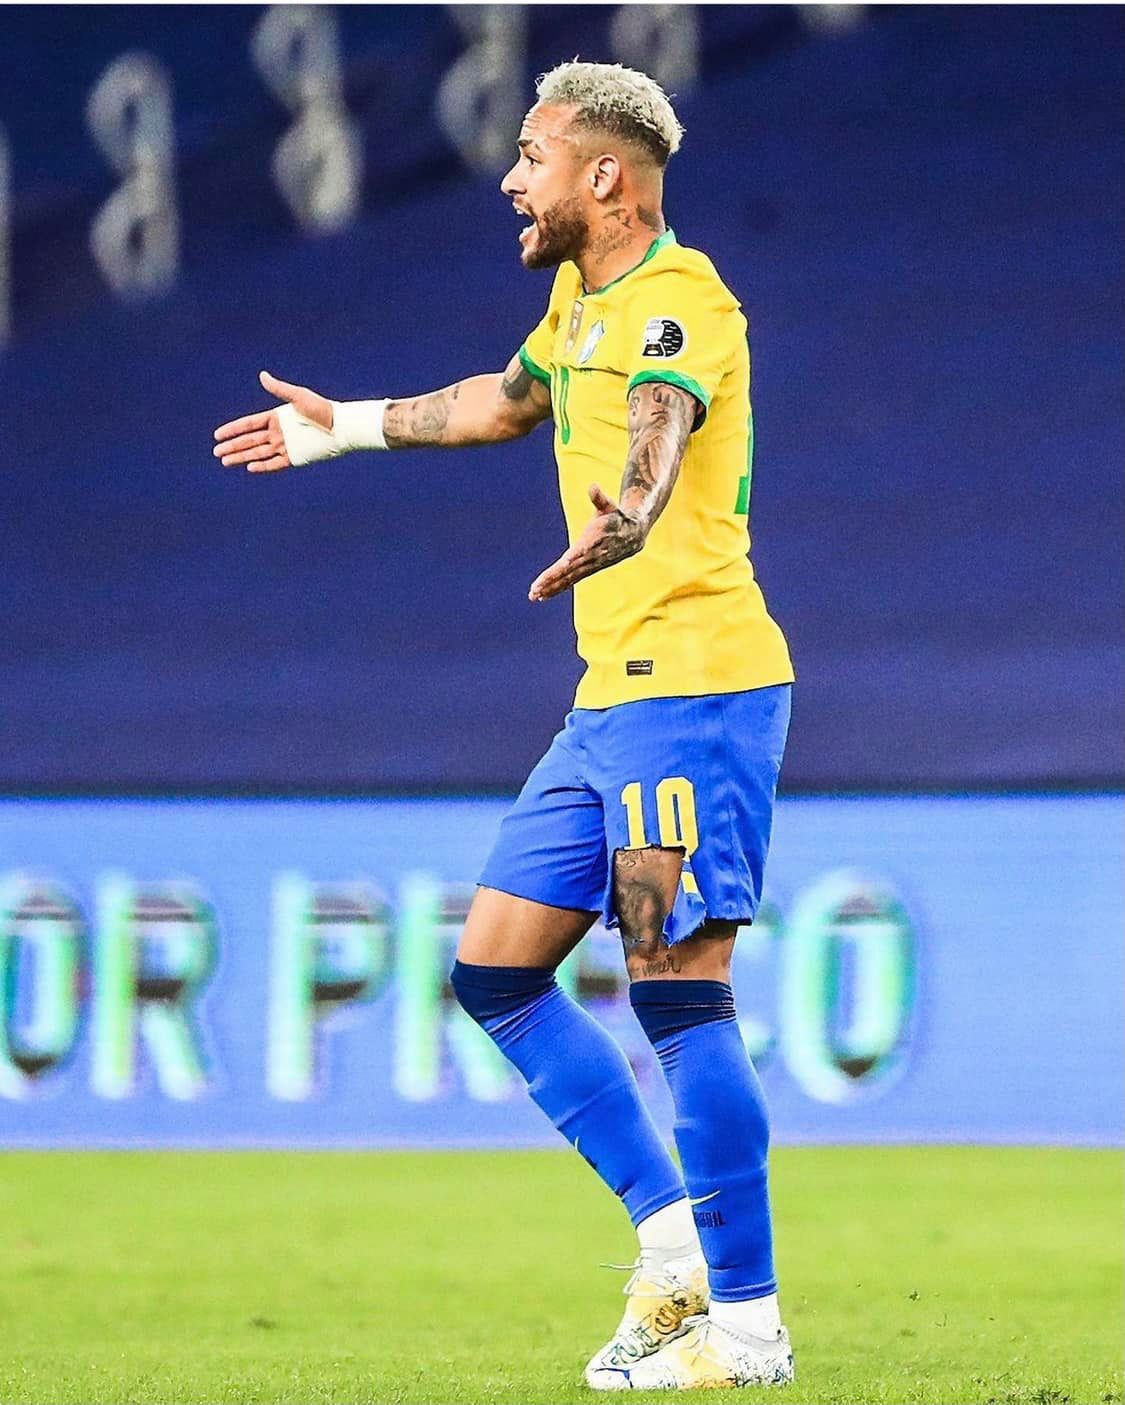 Trận đấu quyết liệt với vô số những pha phạm lỗi, Neymar rách cả quần sau nhiều pha bóng